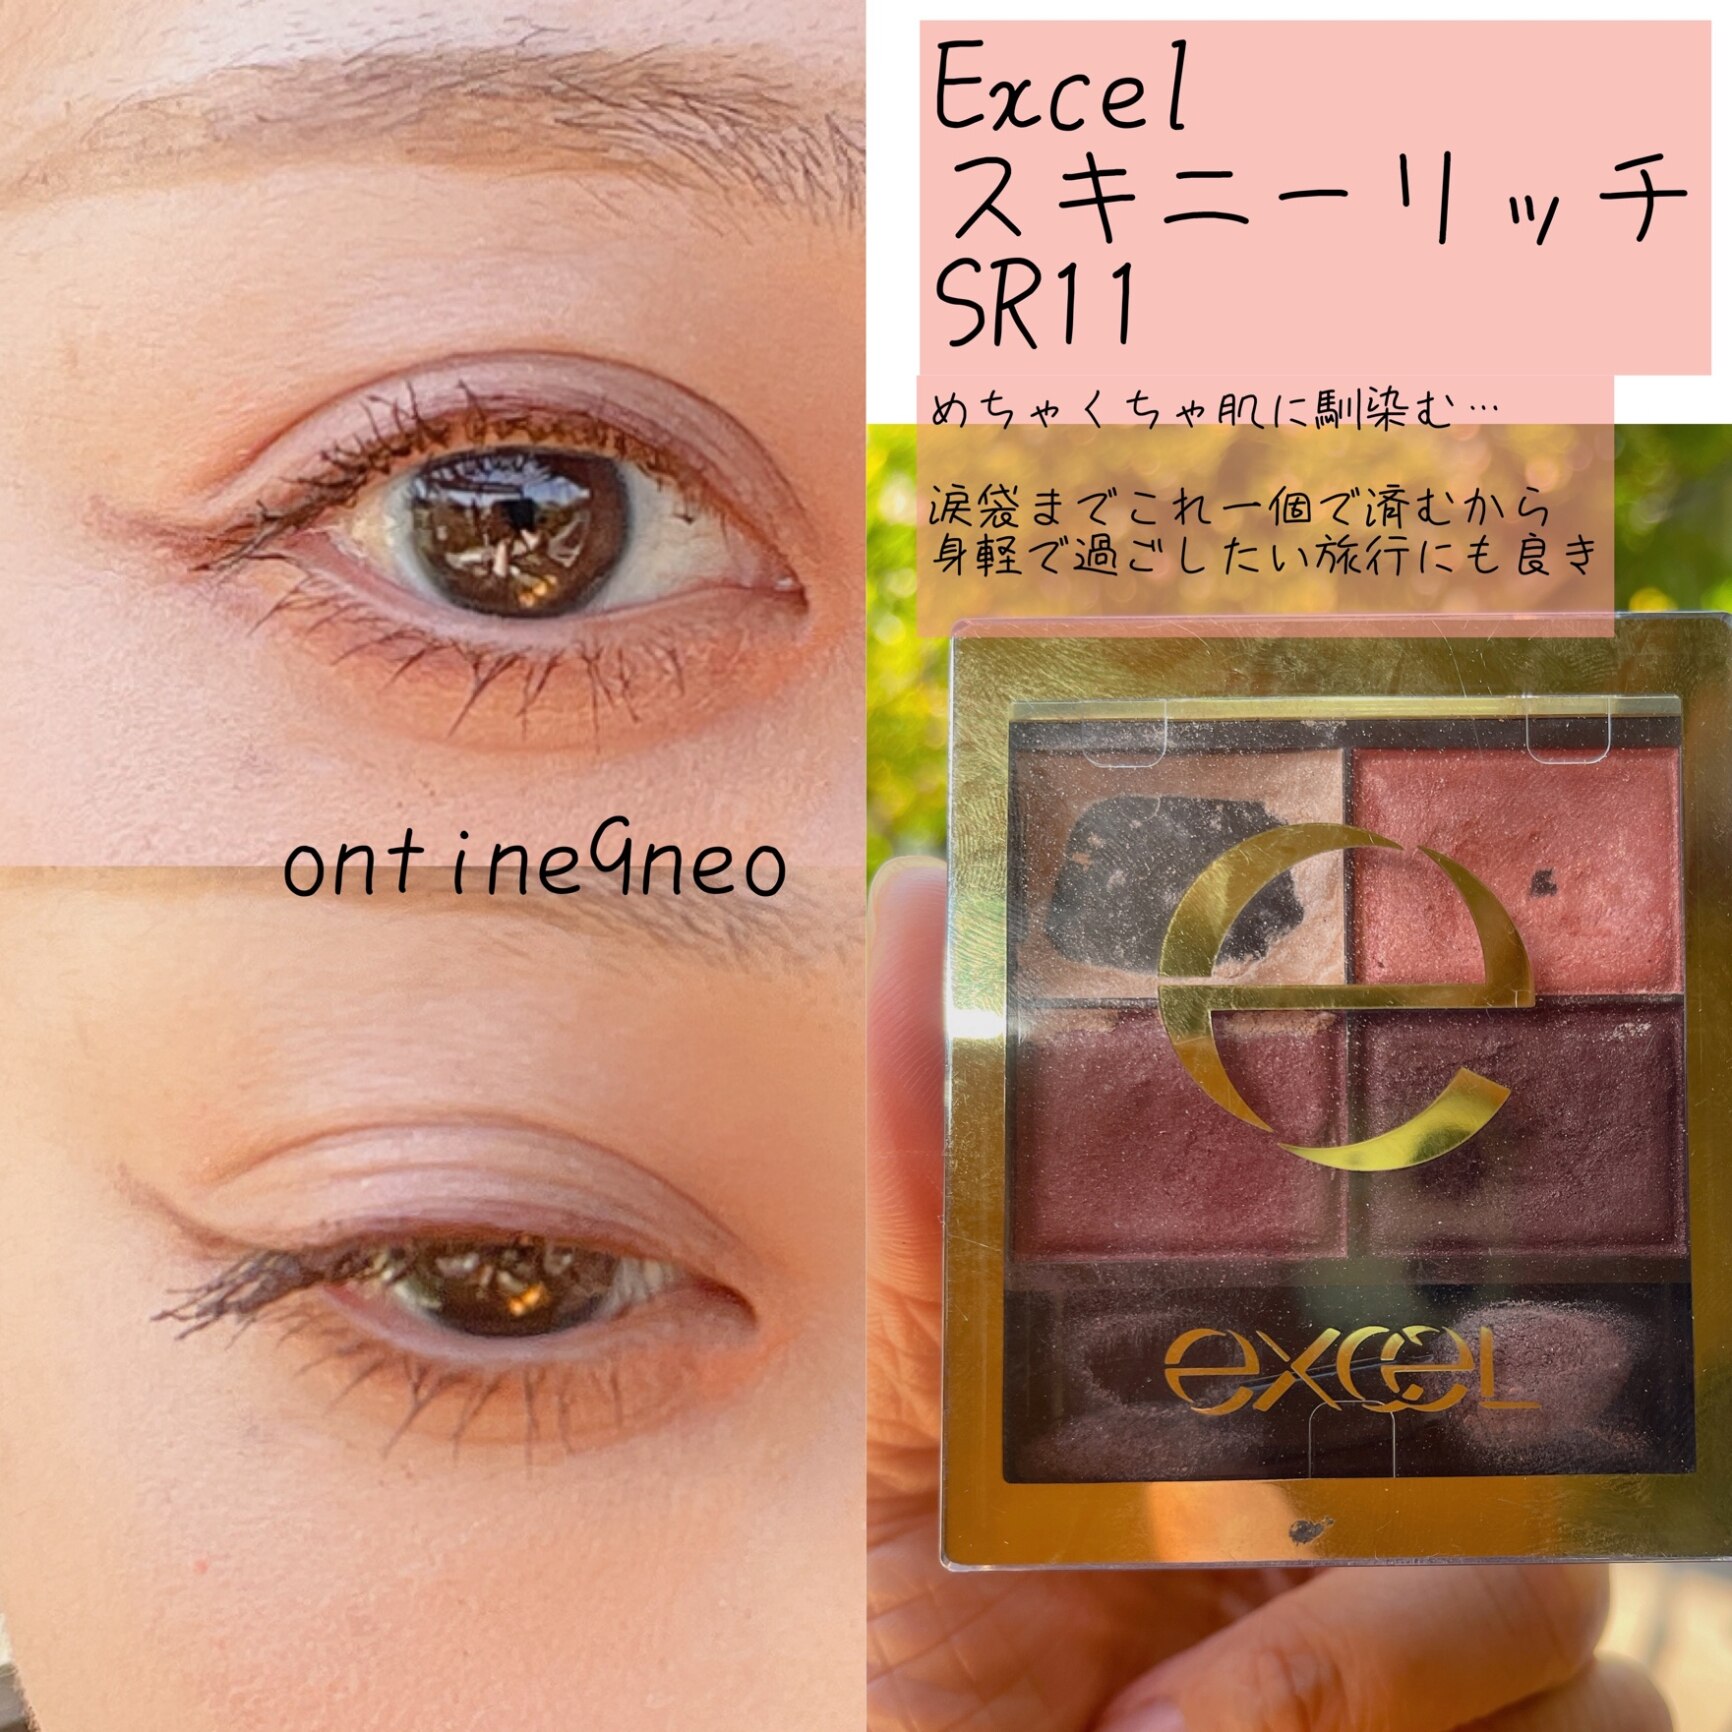 エクセル スキニーリッチシャドウ SR11 ブリックブラウン(4.3g)【エクセル(excel)】